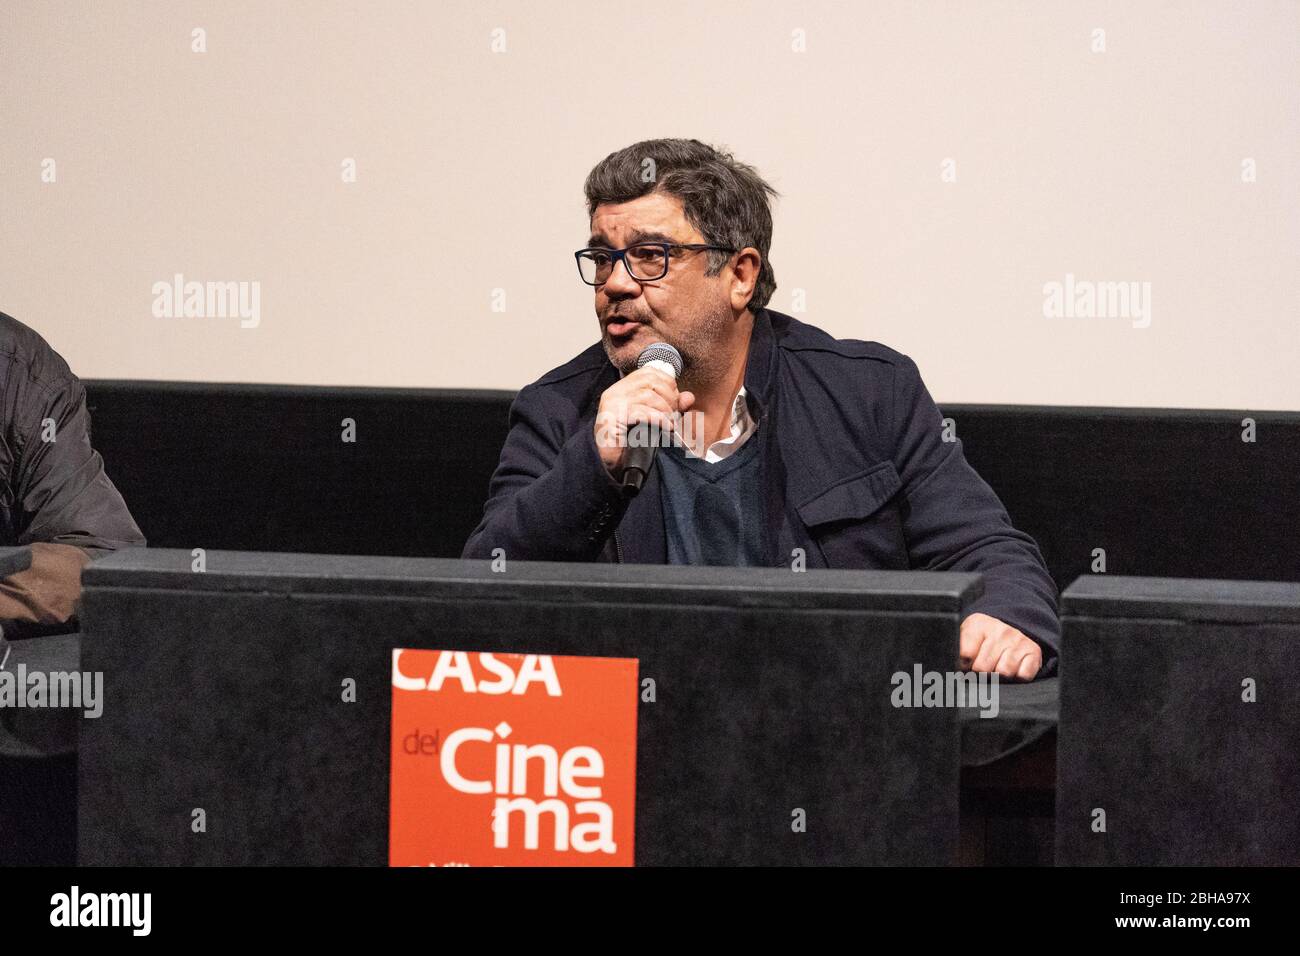 Francesco Pannofino Italian Actor At The Press Conference And Presentation Of The Film La Partita At The Casa Del Cinema In Rome Stock Photo Alamy